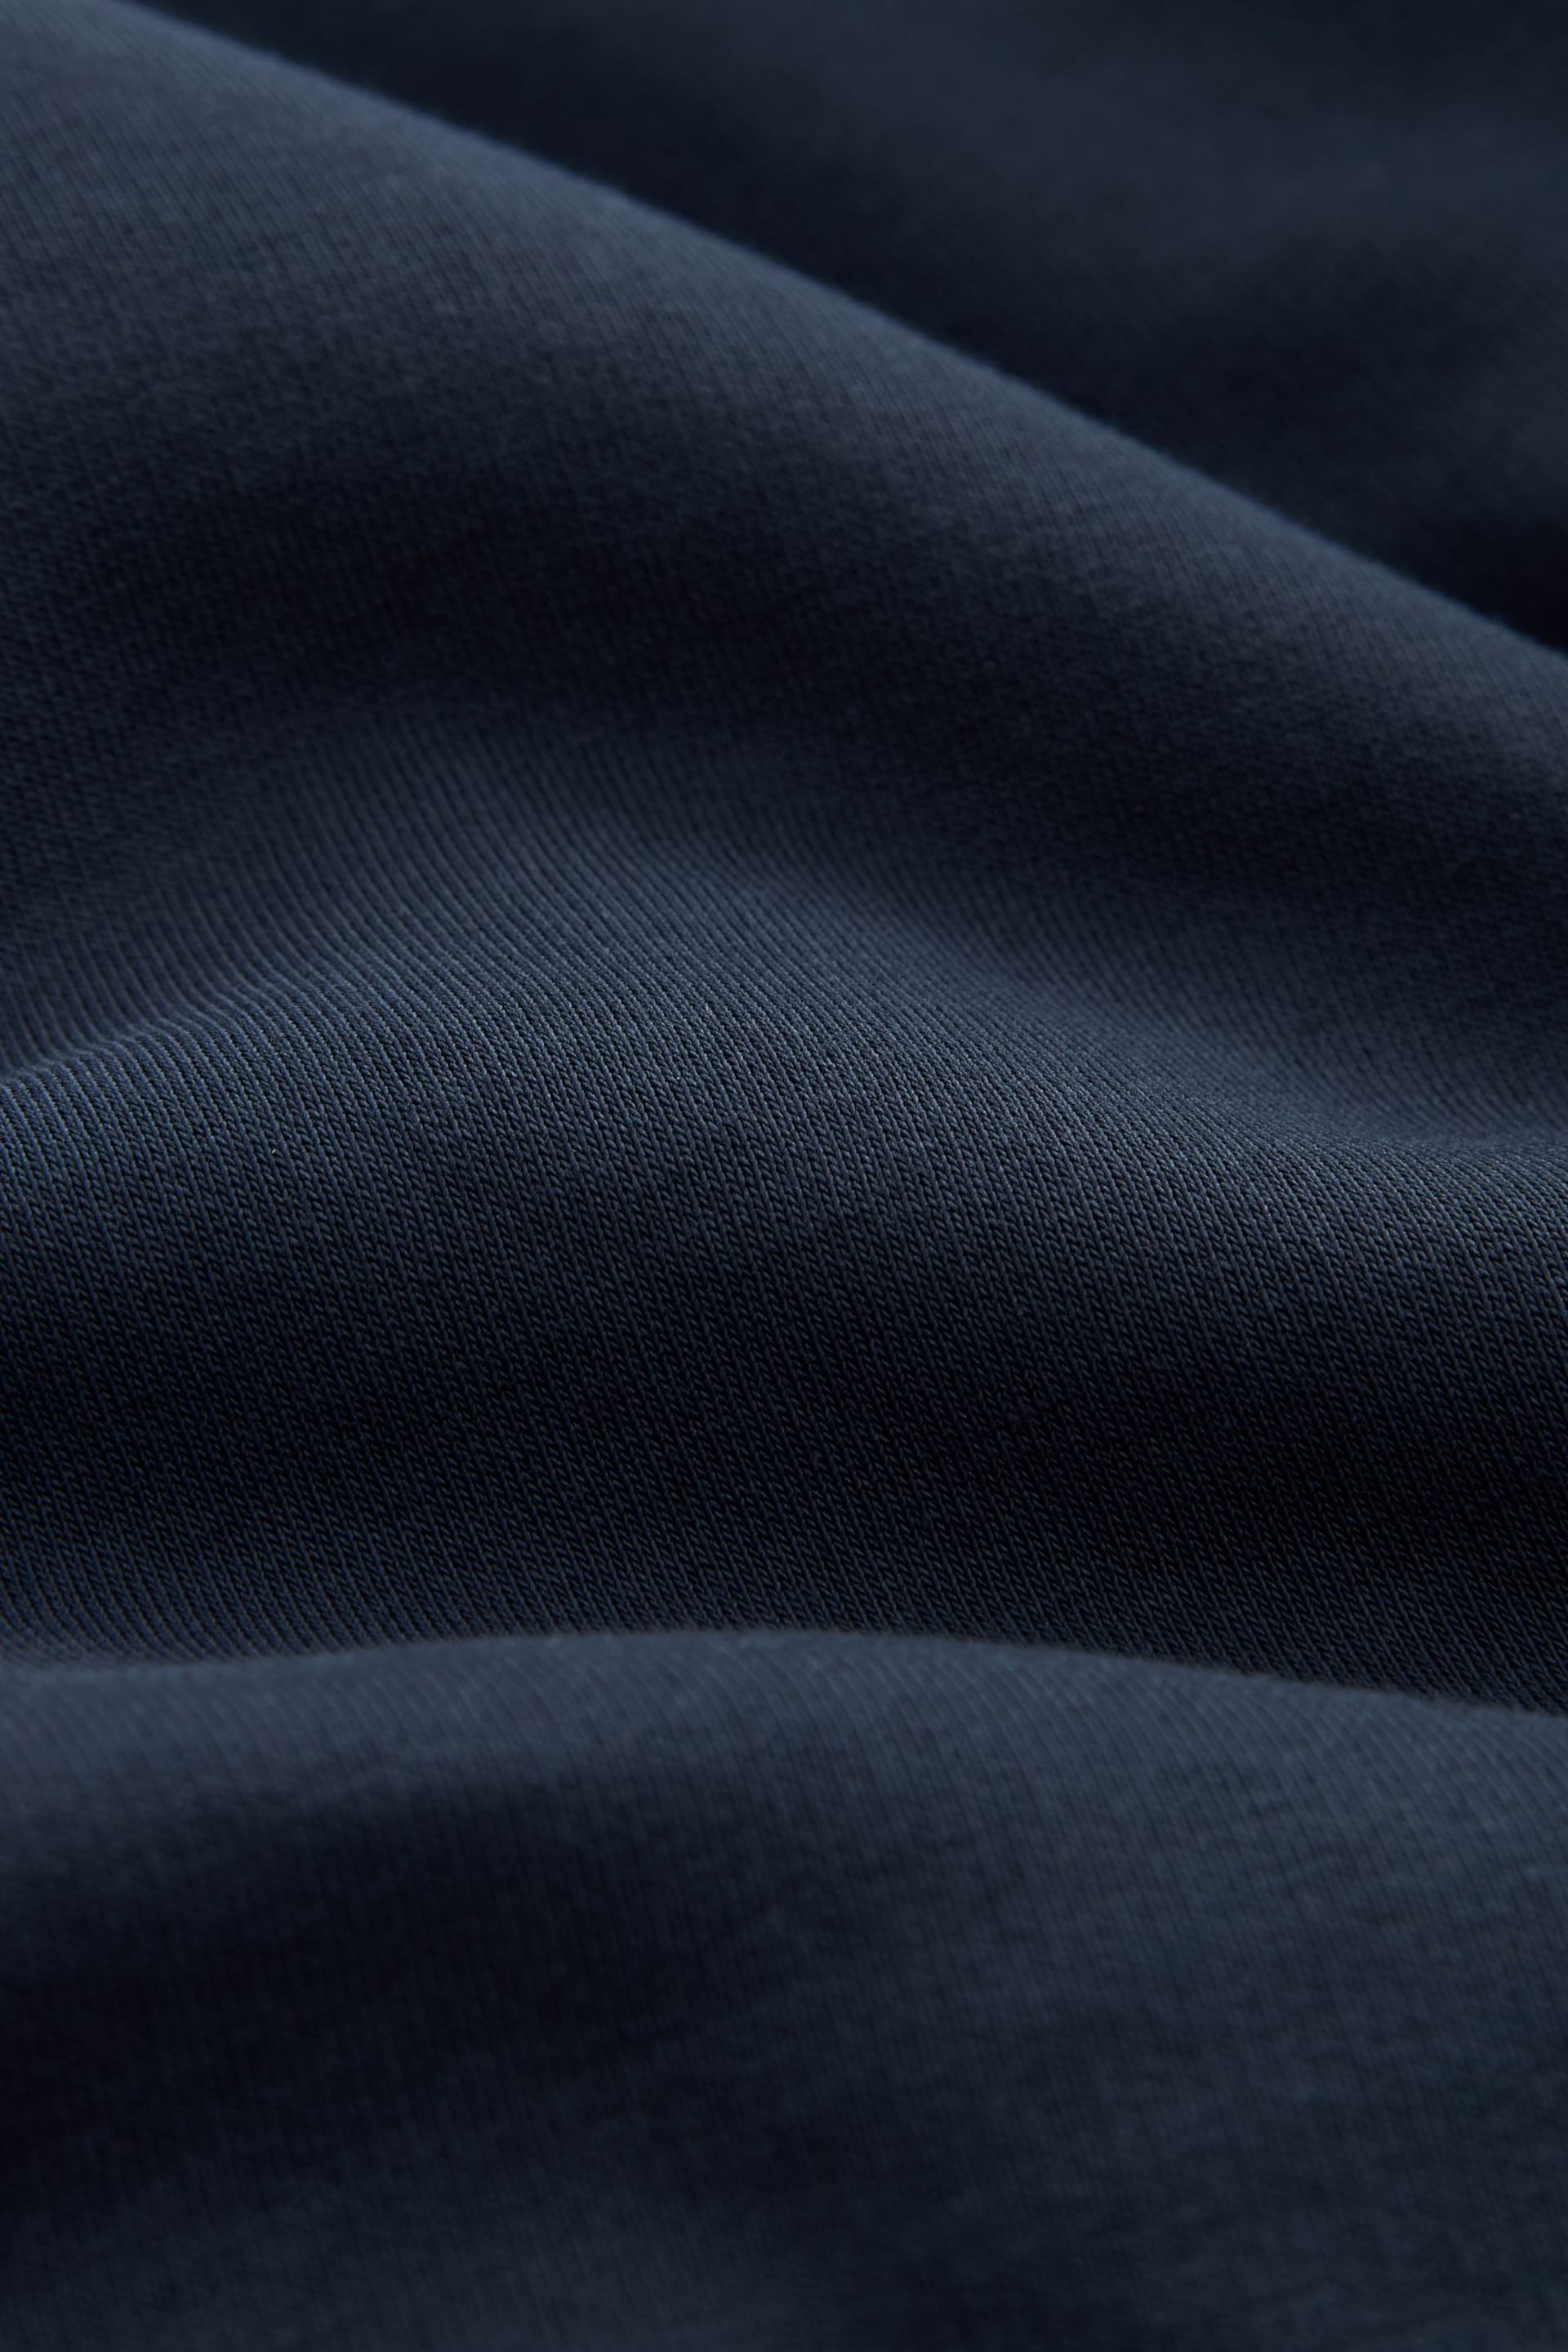 Navy Zip Neck Jersey Cotton Rich Sweatshirt - Image 6 of 7